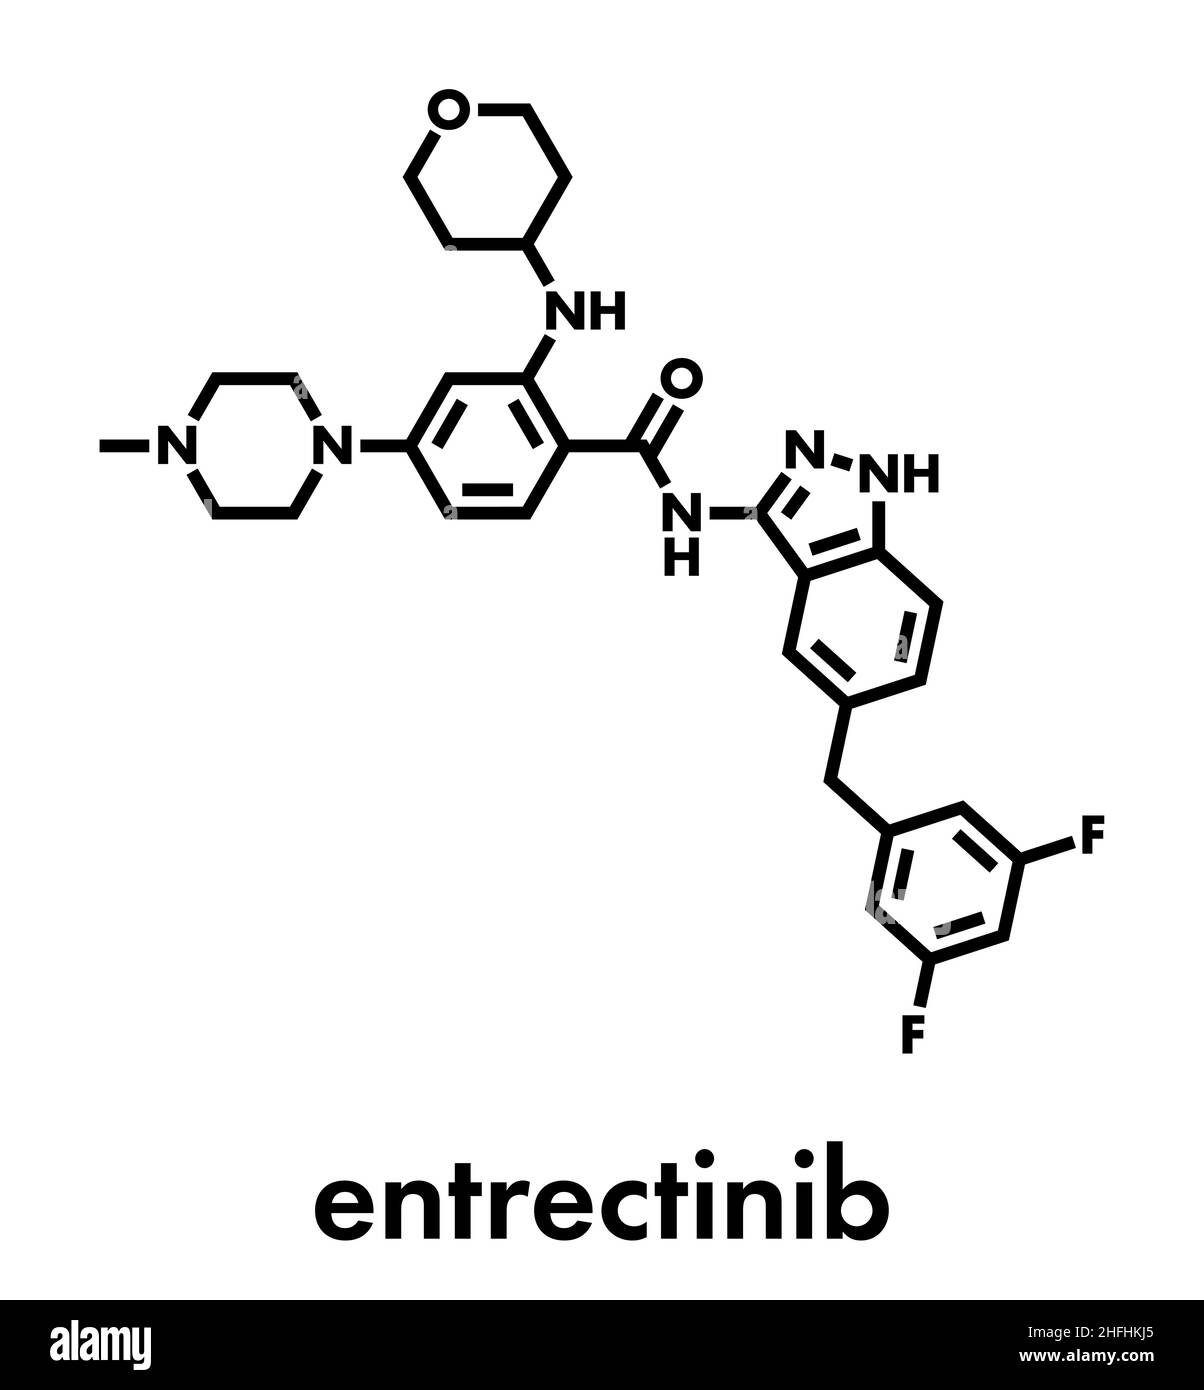 Entrectinib cancer drug molecule. Skeletal formula. Stock Vector